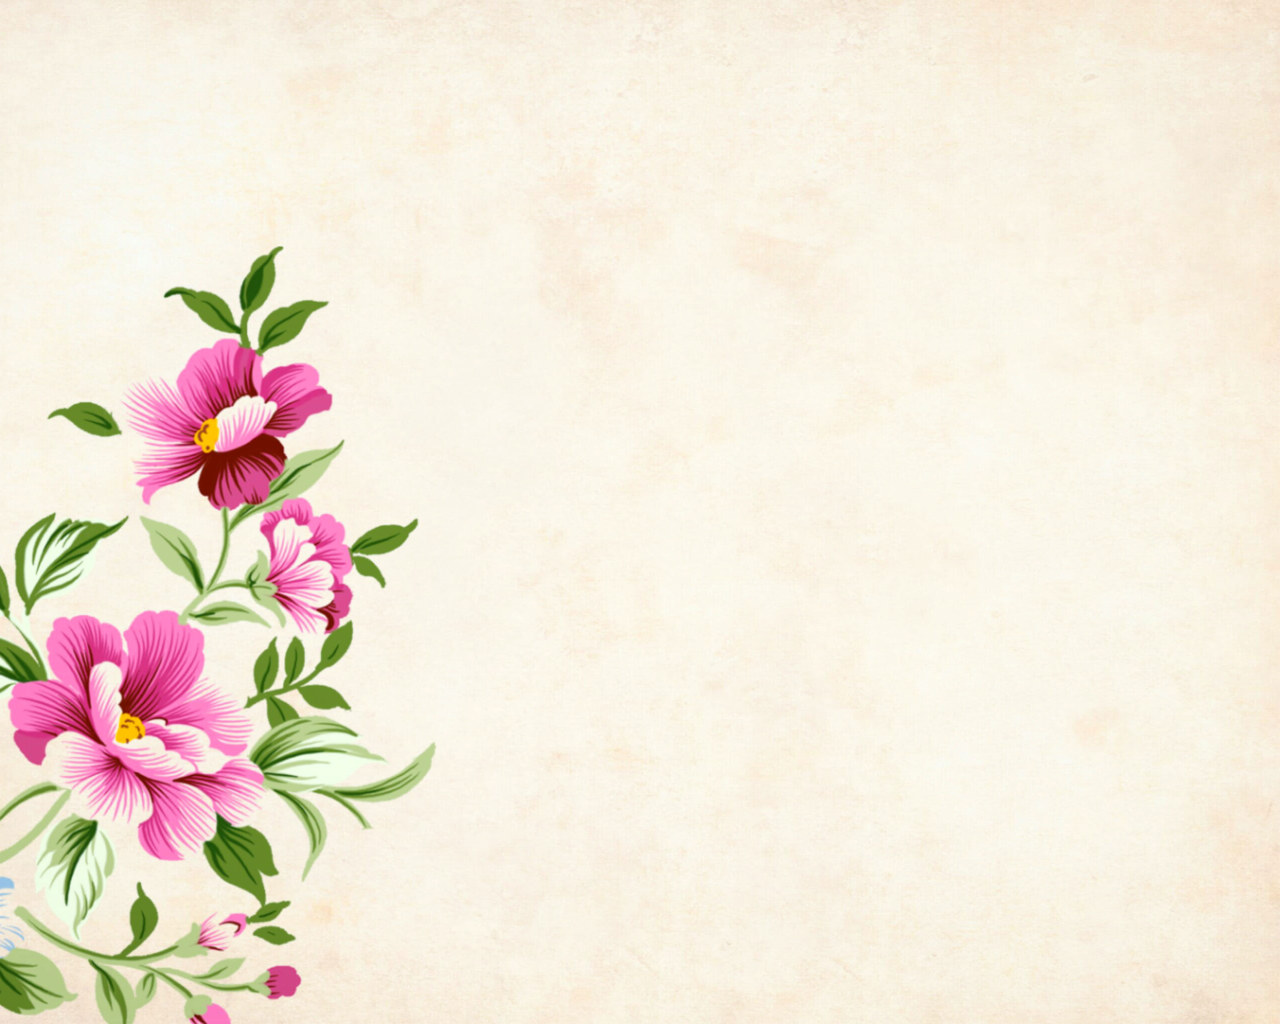 Blooming flowers wallpaper, background, floral, border, garden frame, vintage • Wallpaper For You HD Wallpaper For Desktop & Mobile